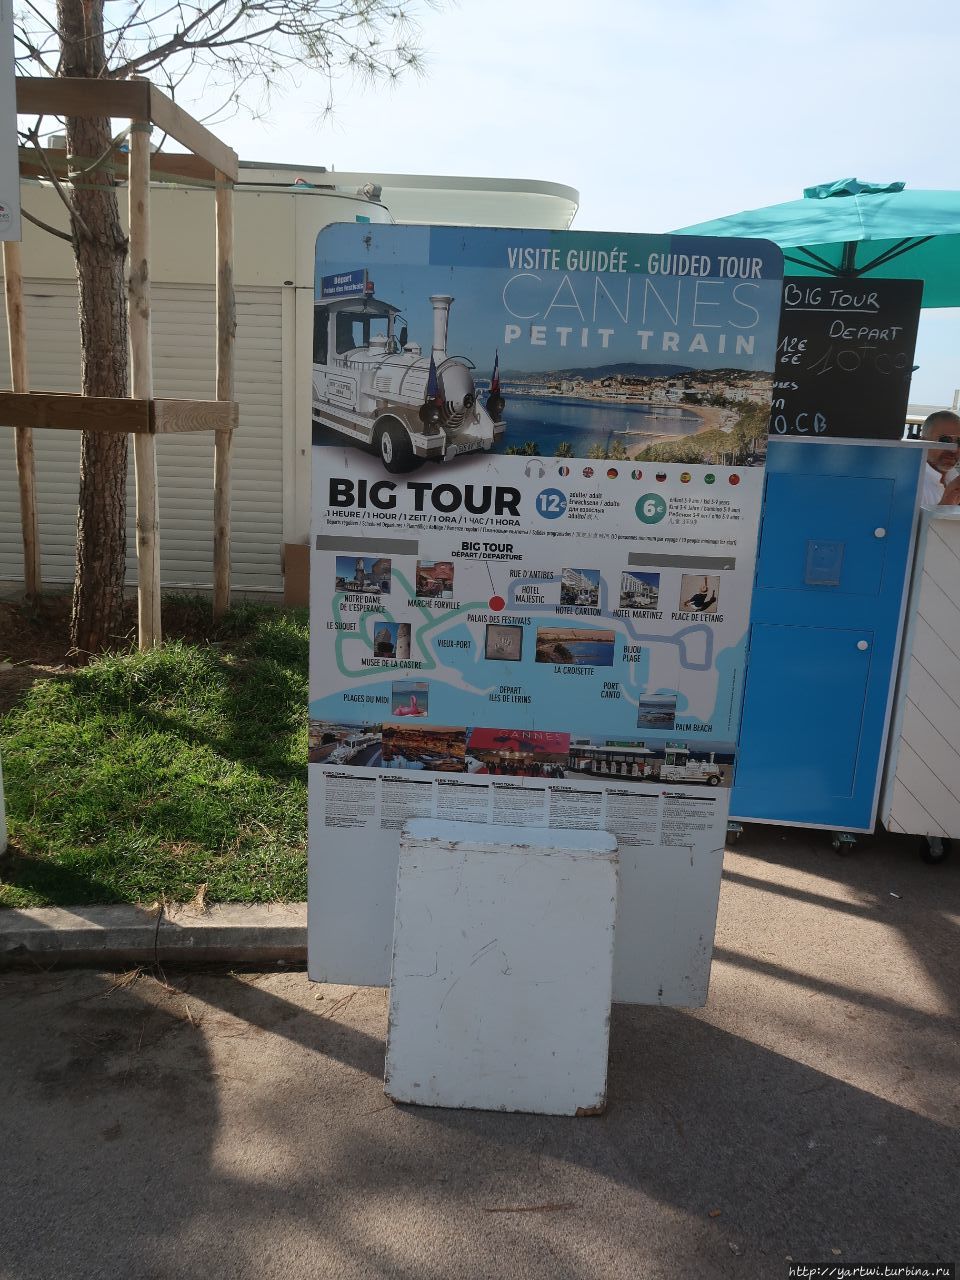 Реклама Big tour на набережной Круазет с маршрутом поездки на маленьком поезде. Канны, Франция